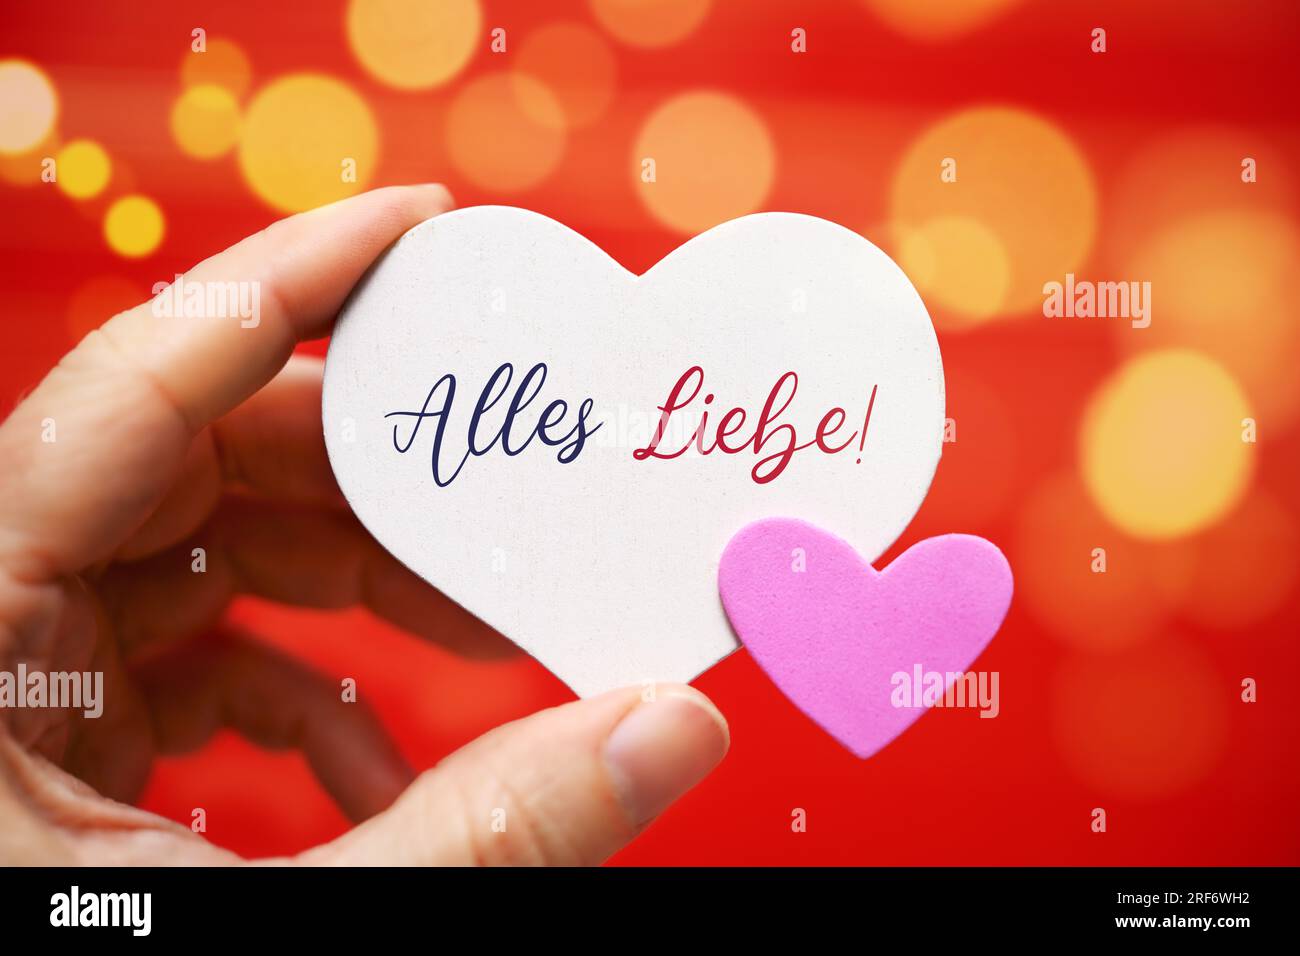 FOTOMONTAGE, Hand hält Herzen mit Aufschrift Alles Liebe, Symbolfoto Valentinstag Stock Photo